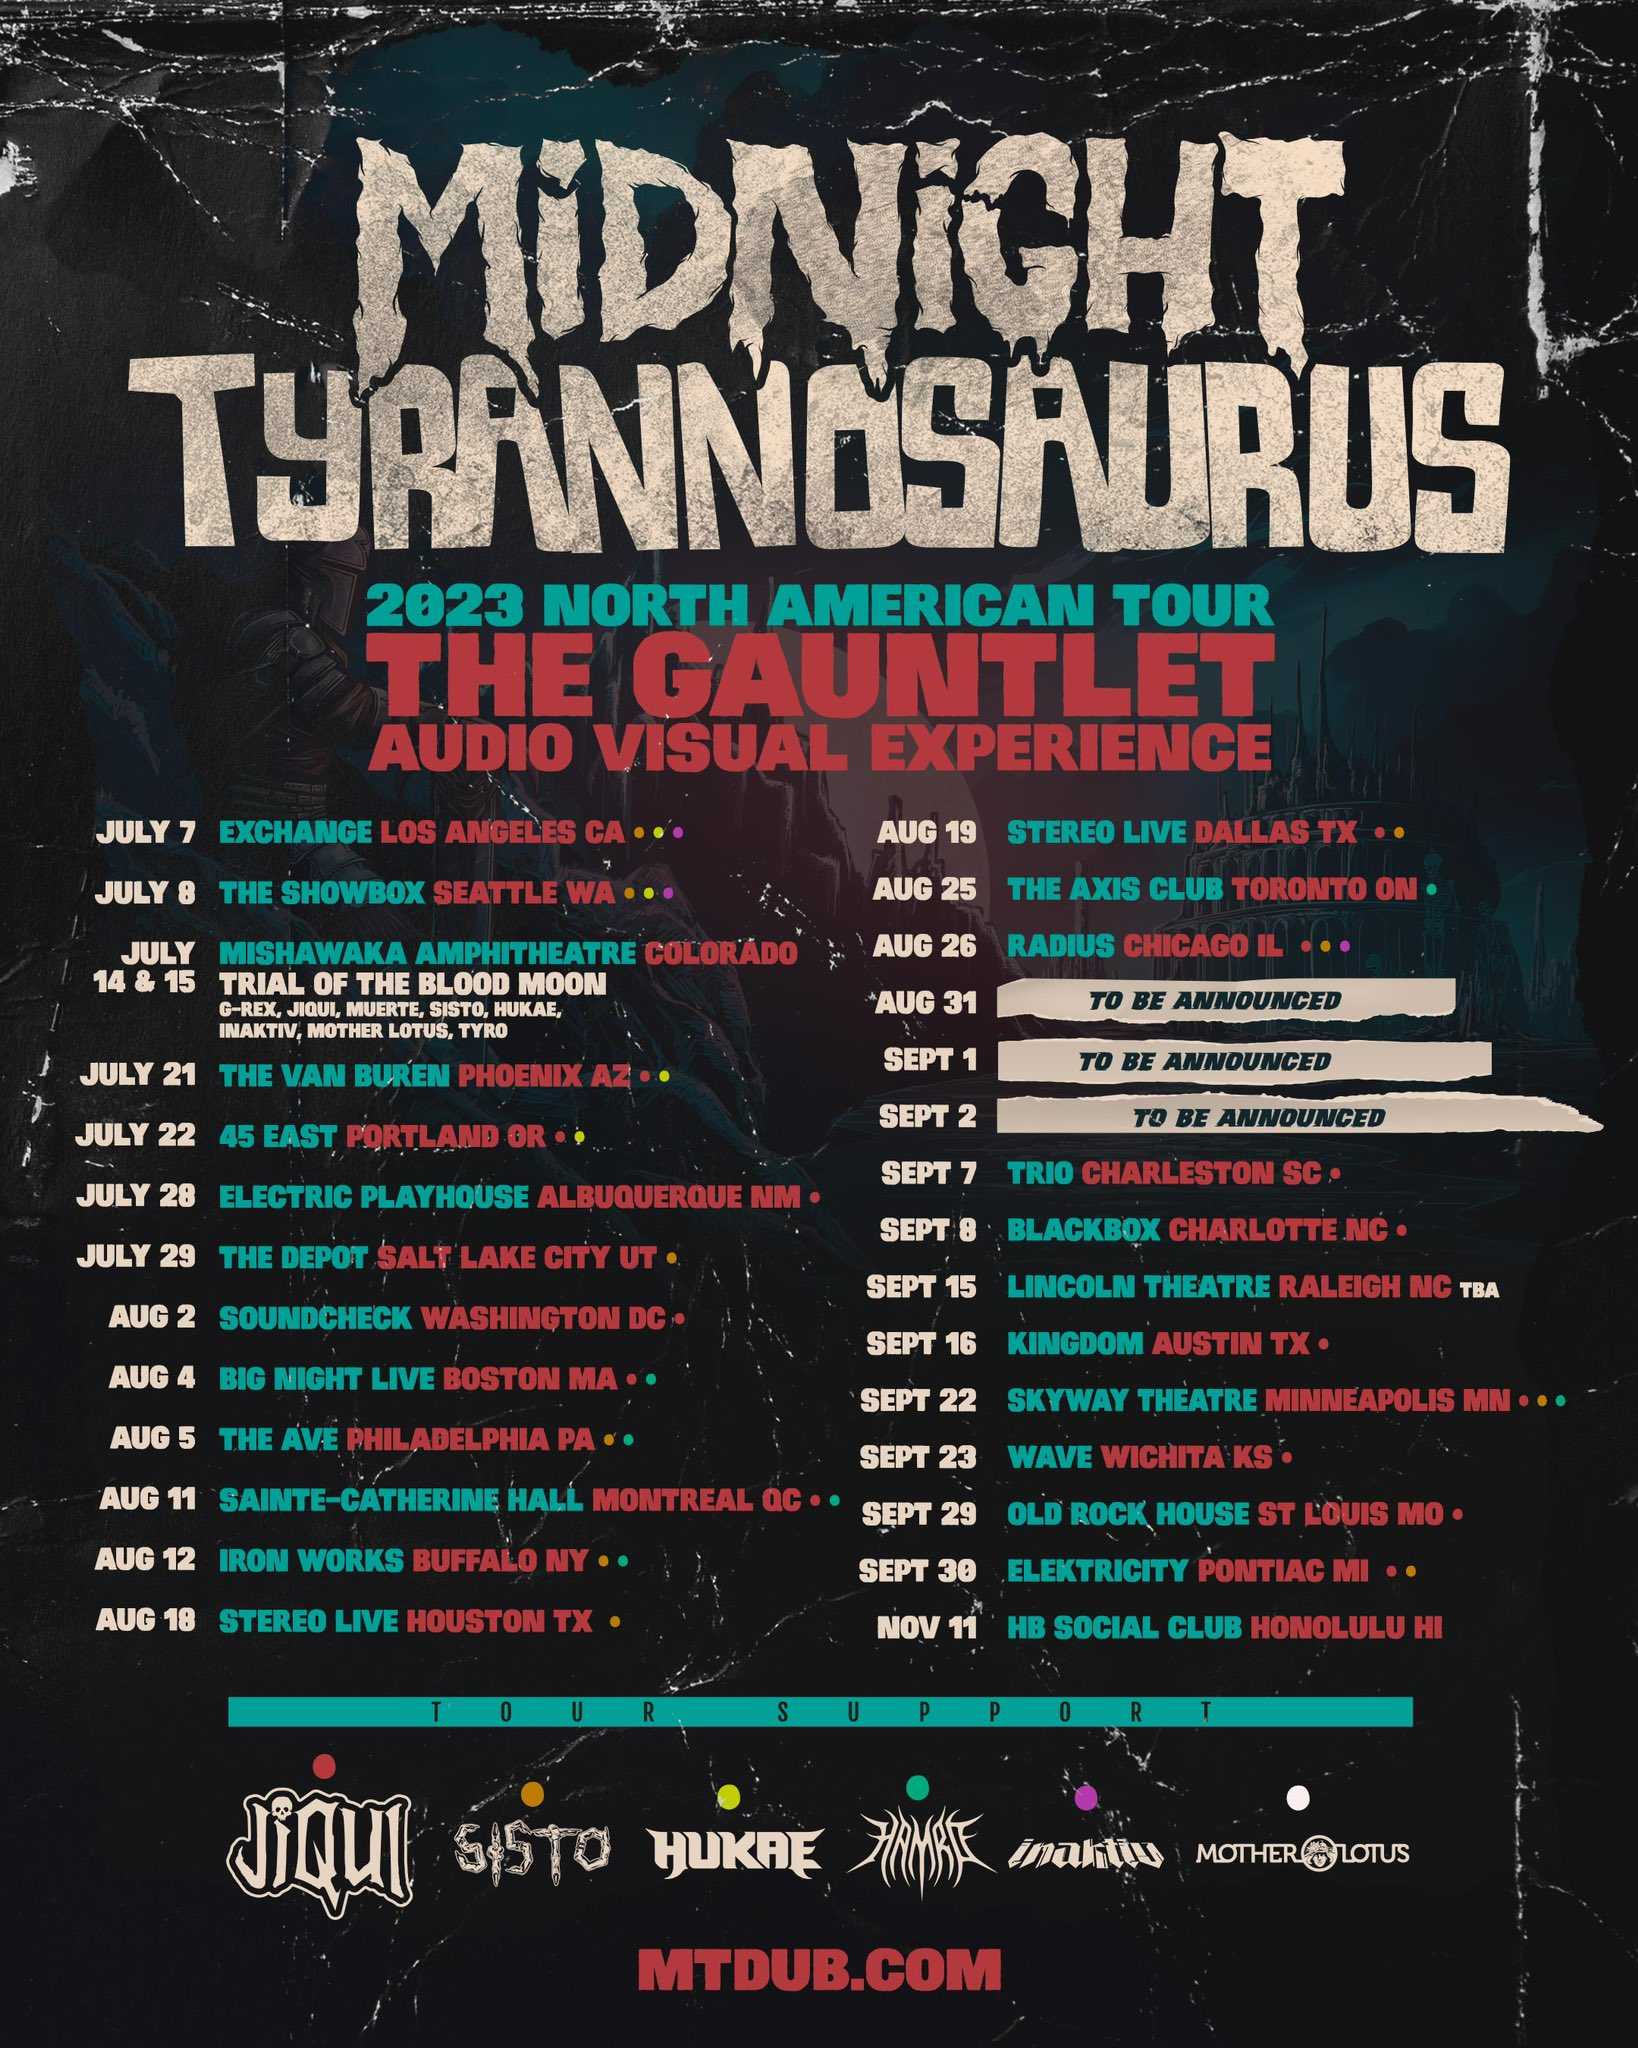 midnight-tyrannosaurus-the-gauntlet-tour-elektricity-2023-09-30-detroit